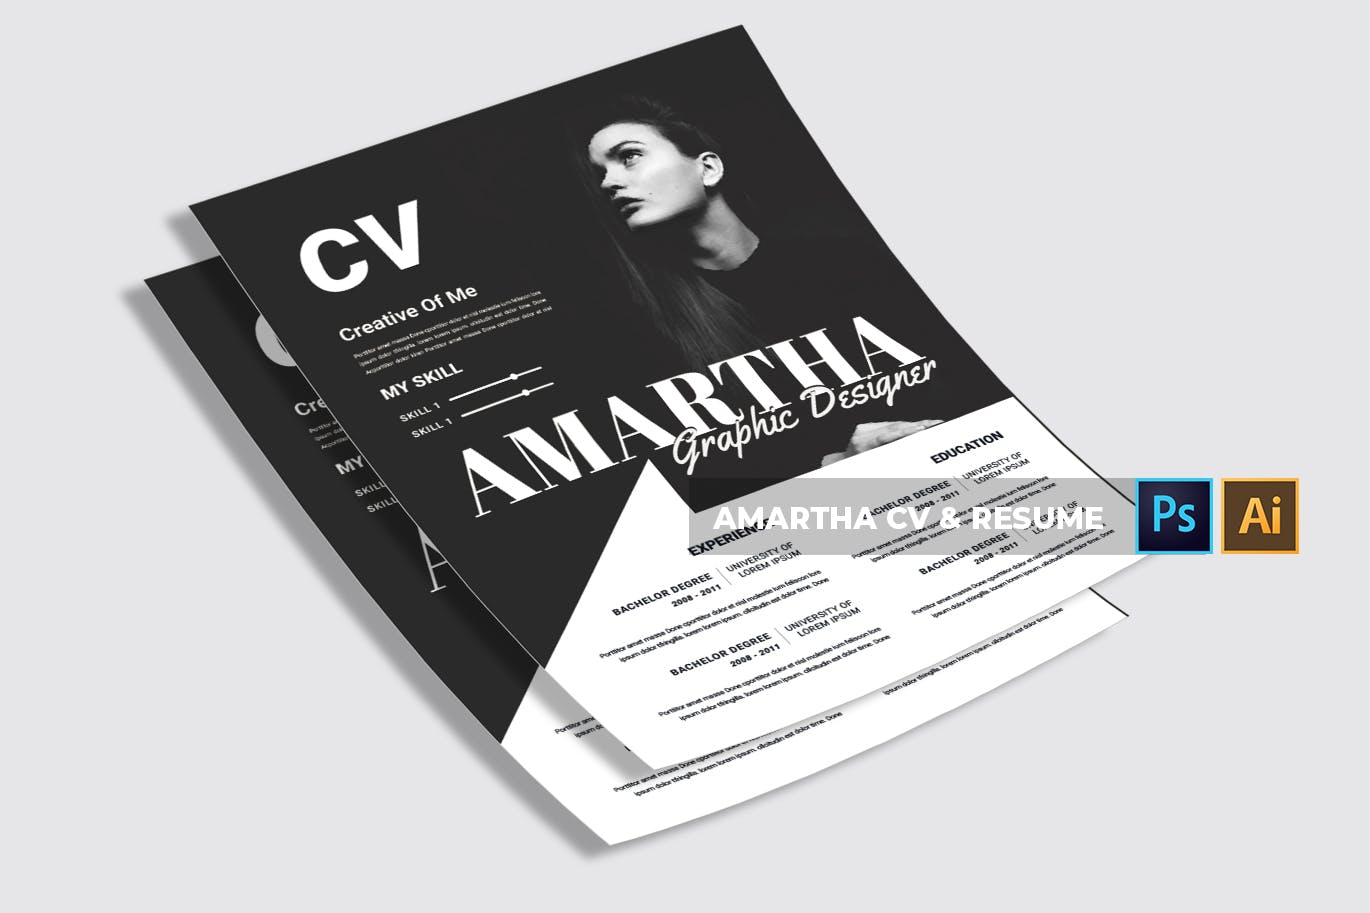 图形设计师/模特/时装设计师个人电子简历模板 Amartha | CV & Resume插图(4)